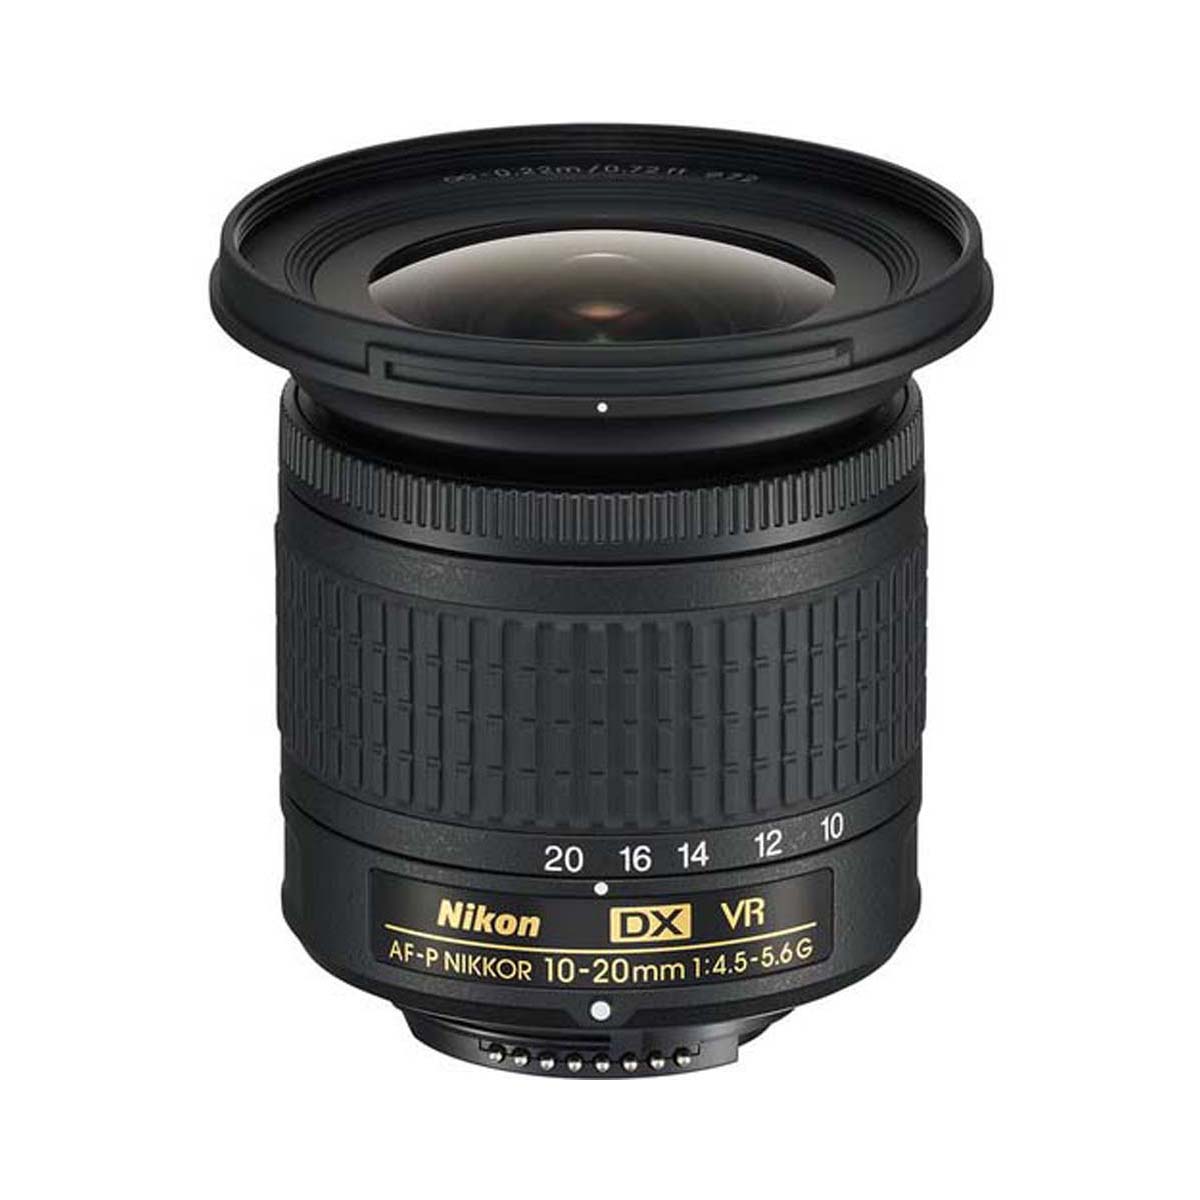 Nikon - AF-P DX NIKKOR 10-20mm f/4.5-5.6G VR Lens